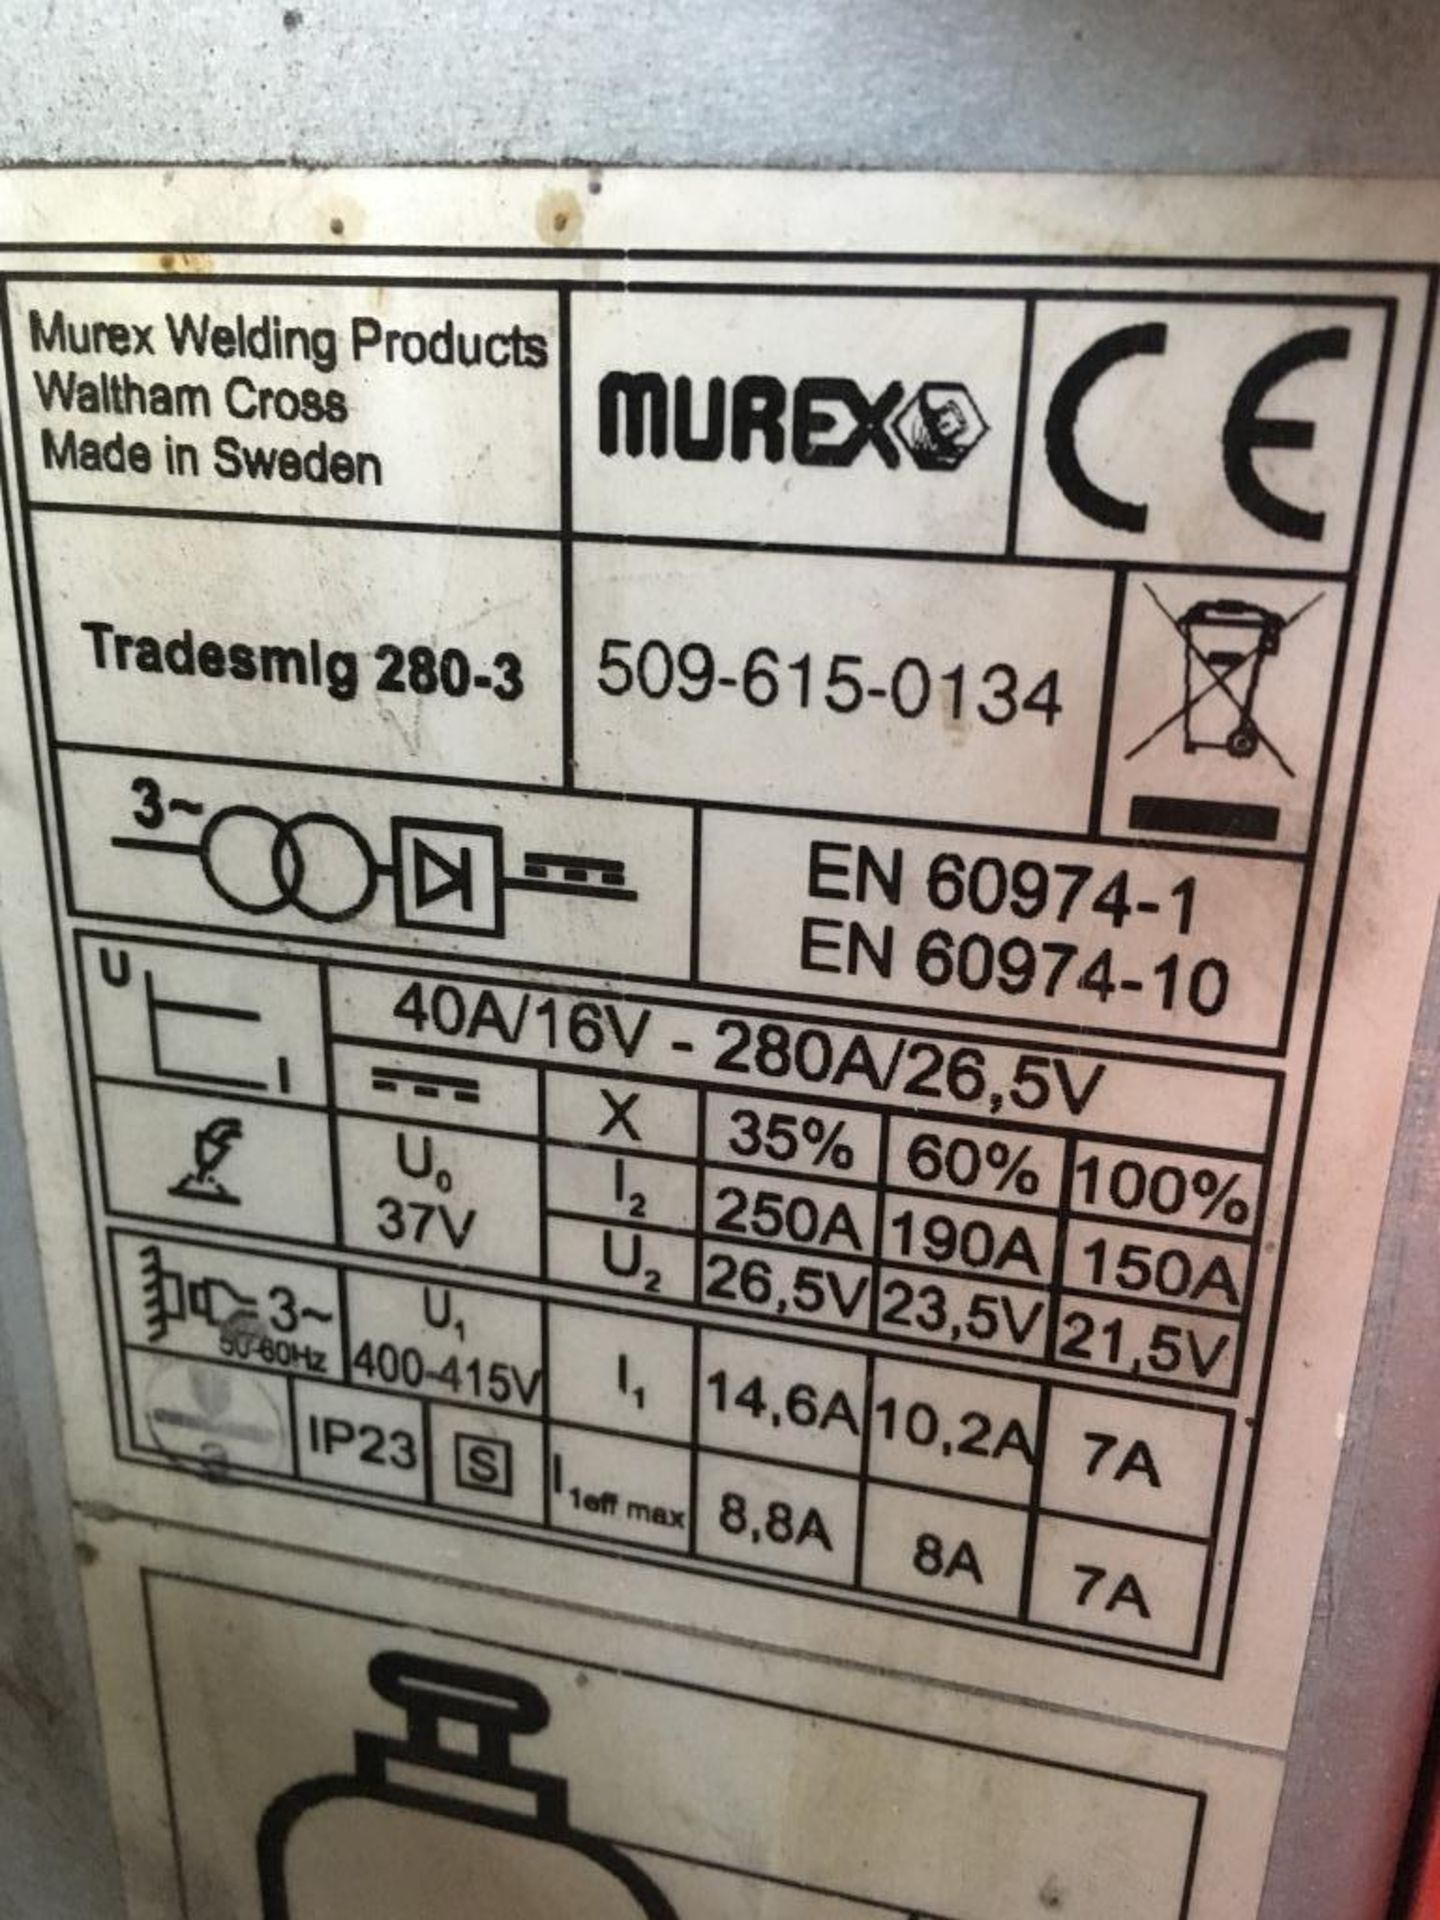 Murex Tradesmig 280-3 mig welder - Image 4 of 4